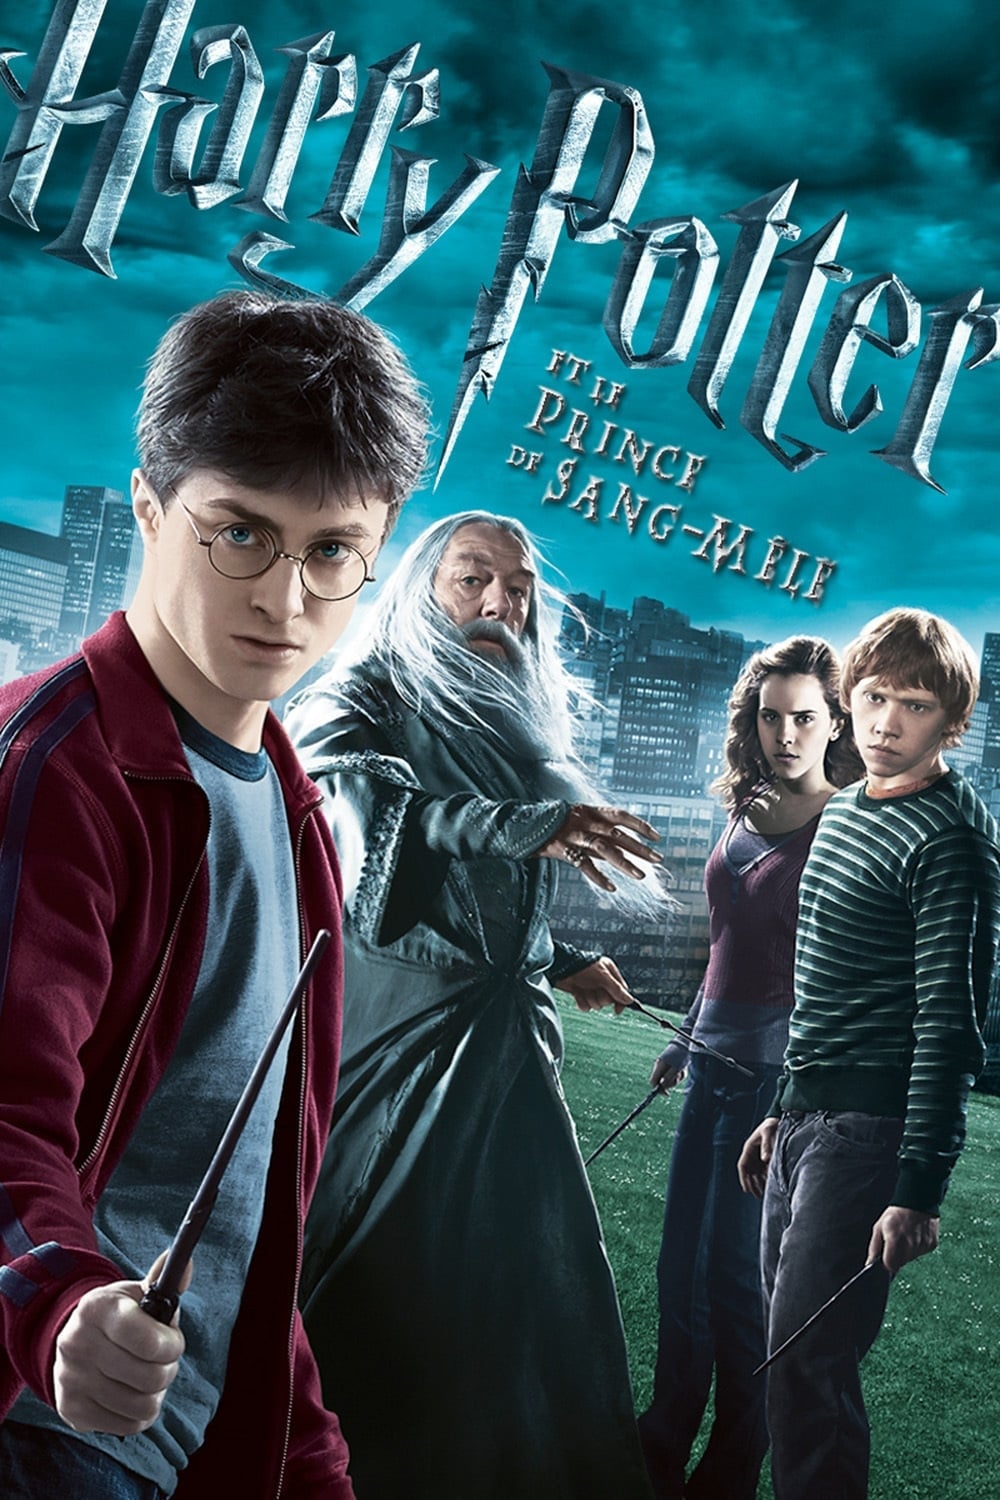 Harry Potter et le Prince de sang mêlé streaming